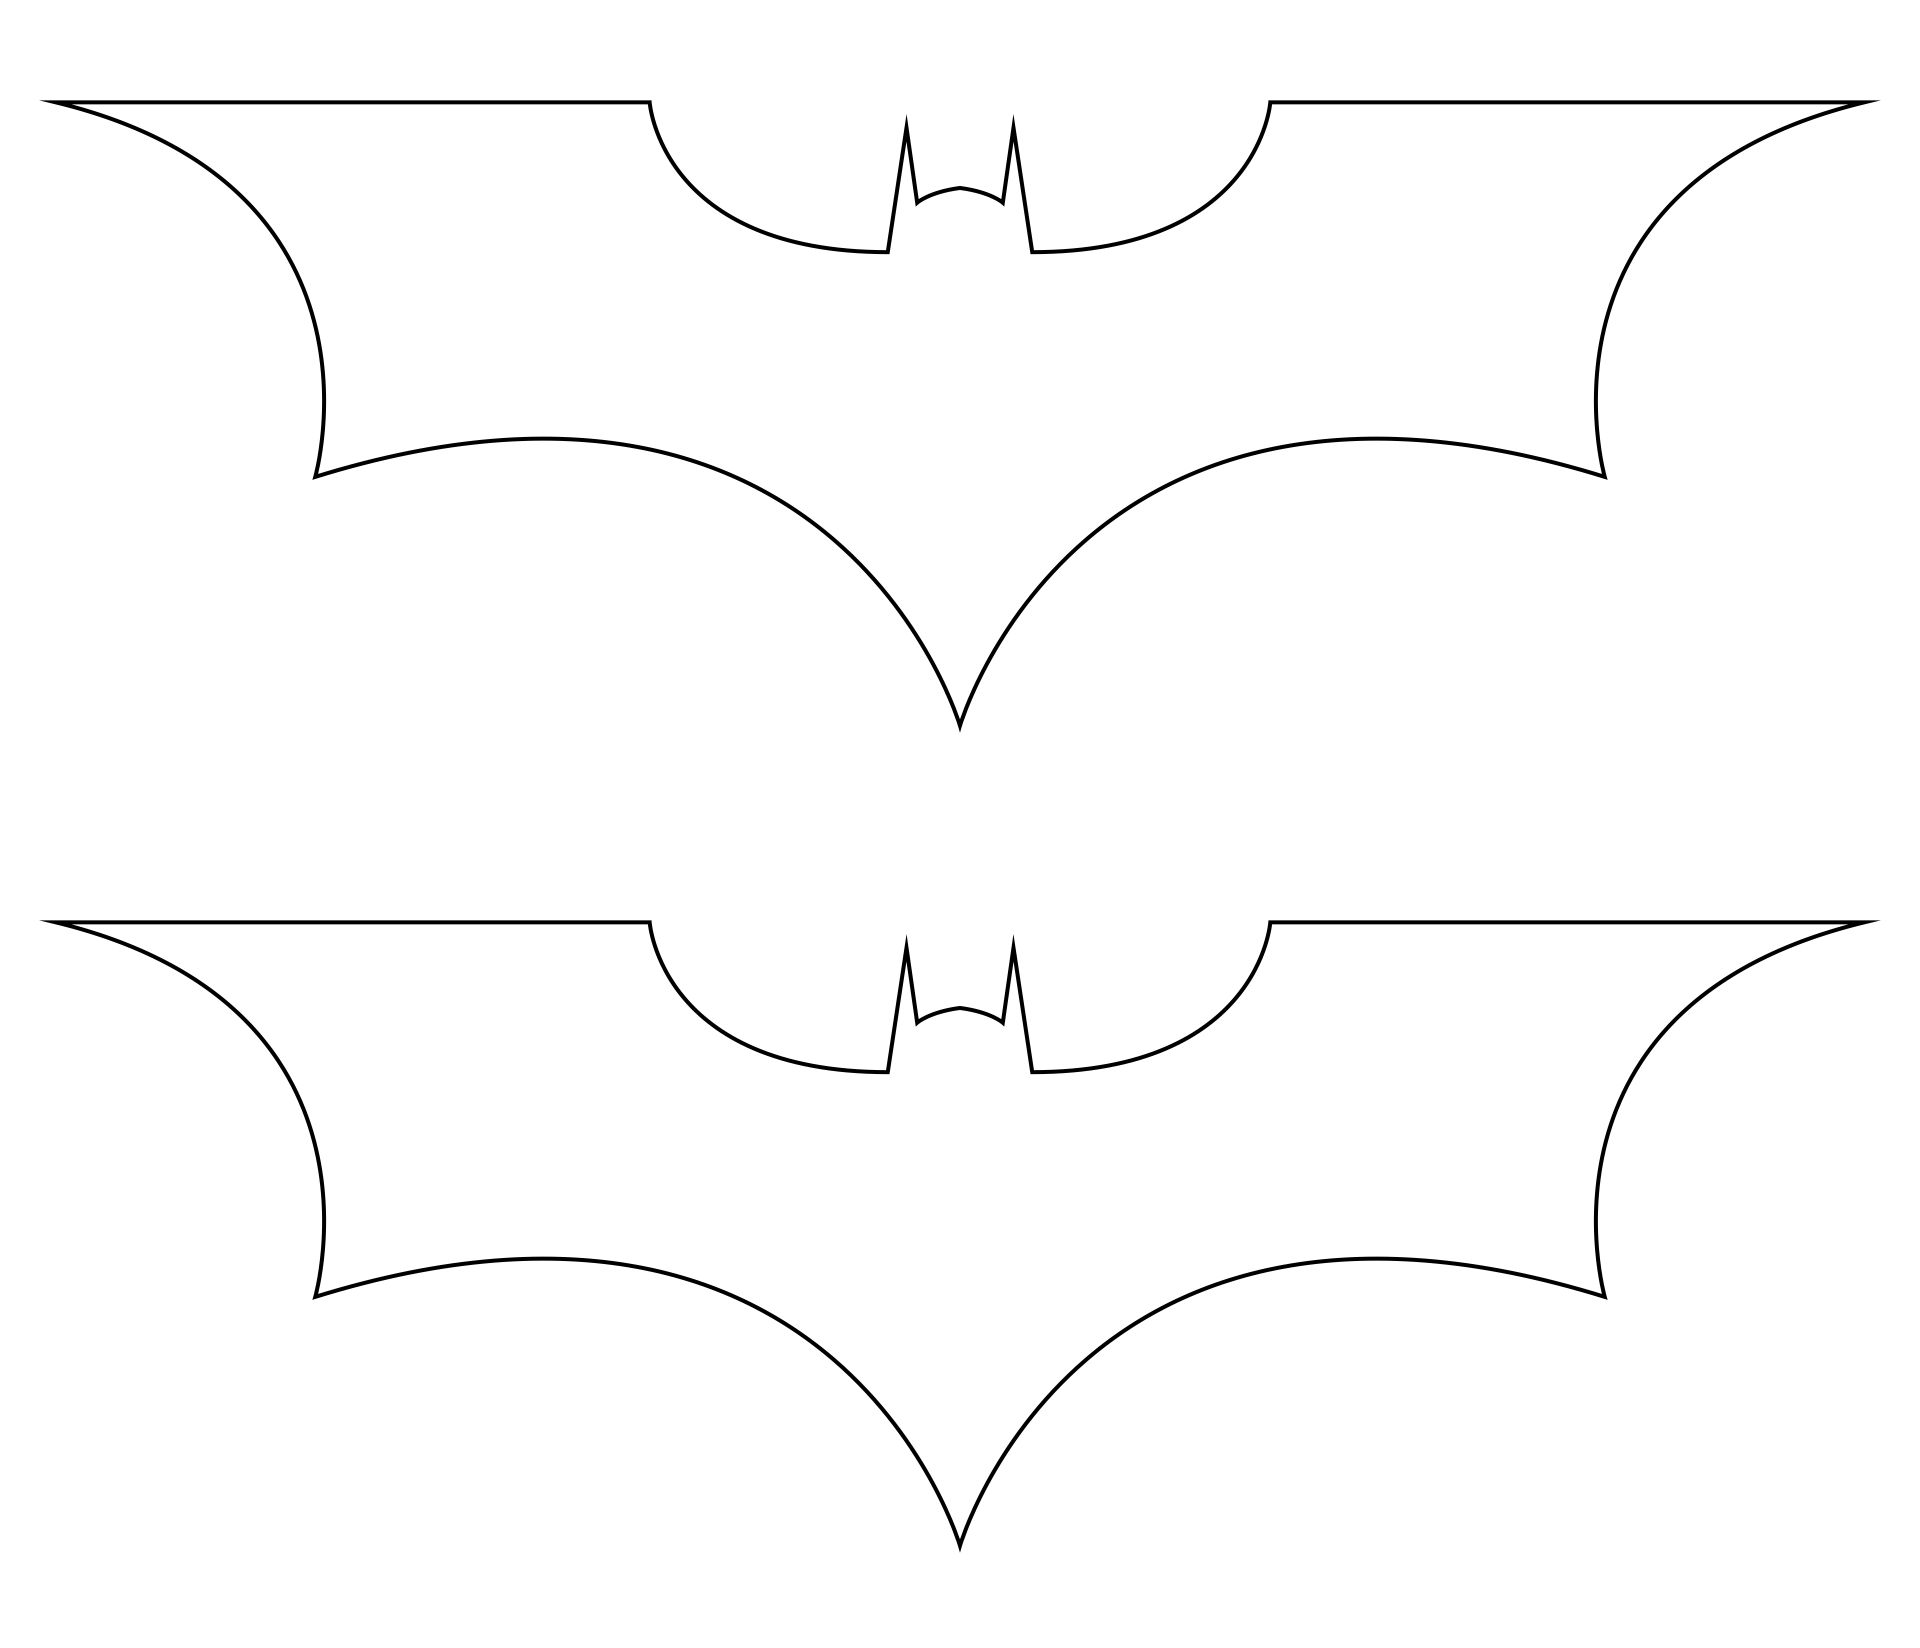 7 Best Images of Halloween Bat Stencils Printable Halloween Bat